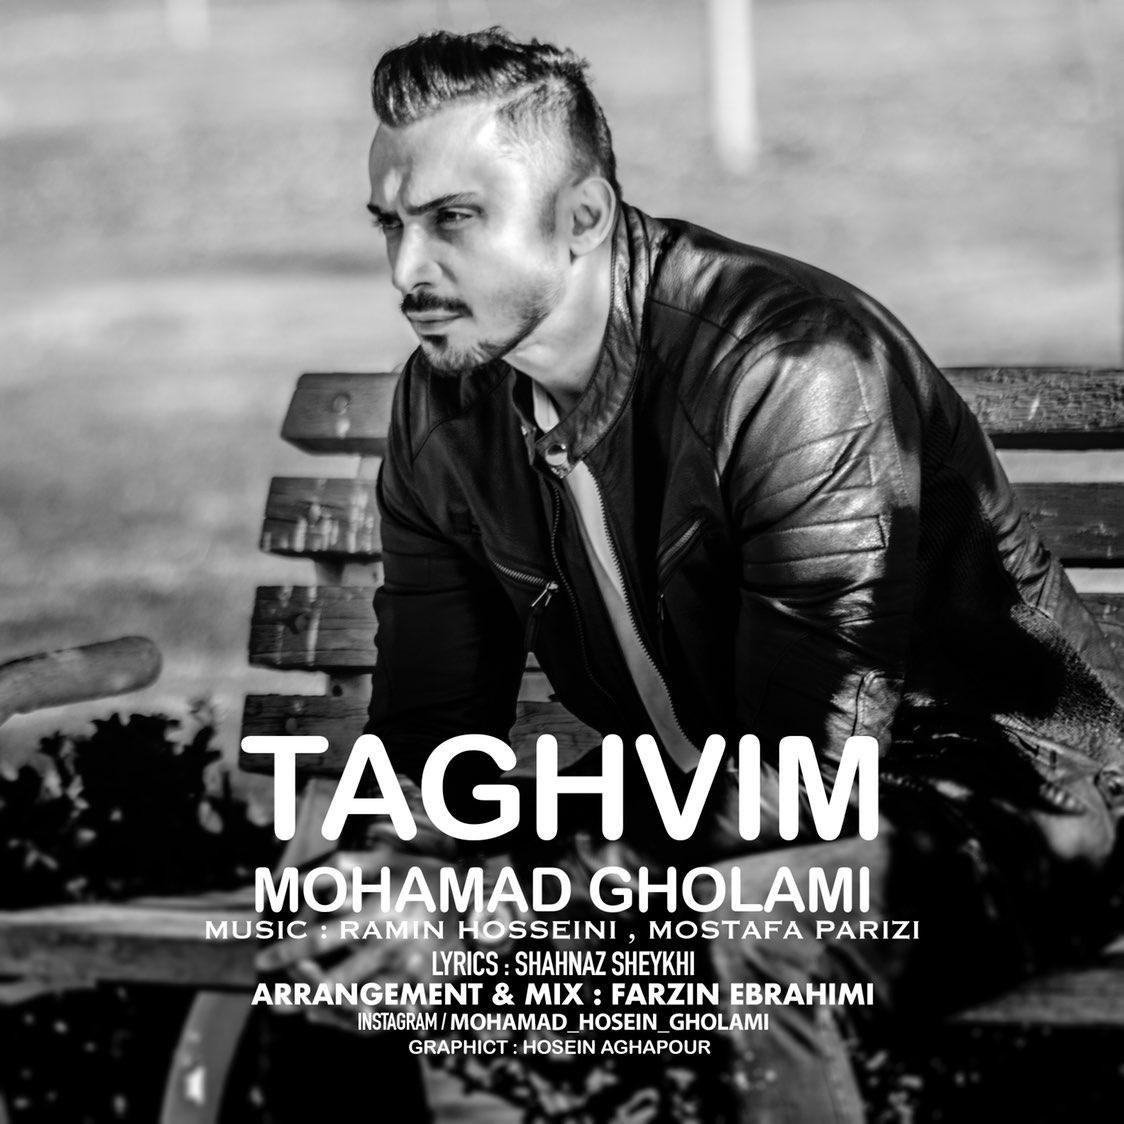  دانلود آهنگ جدید محمد غلامی - تقویم | Download New Music By Mohamad Gholami - Taghvim